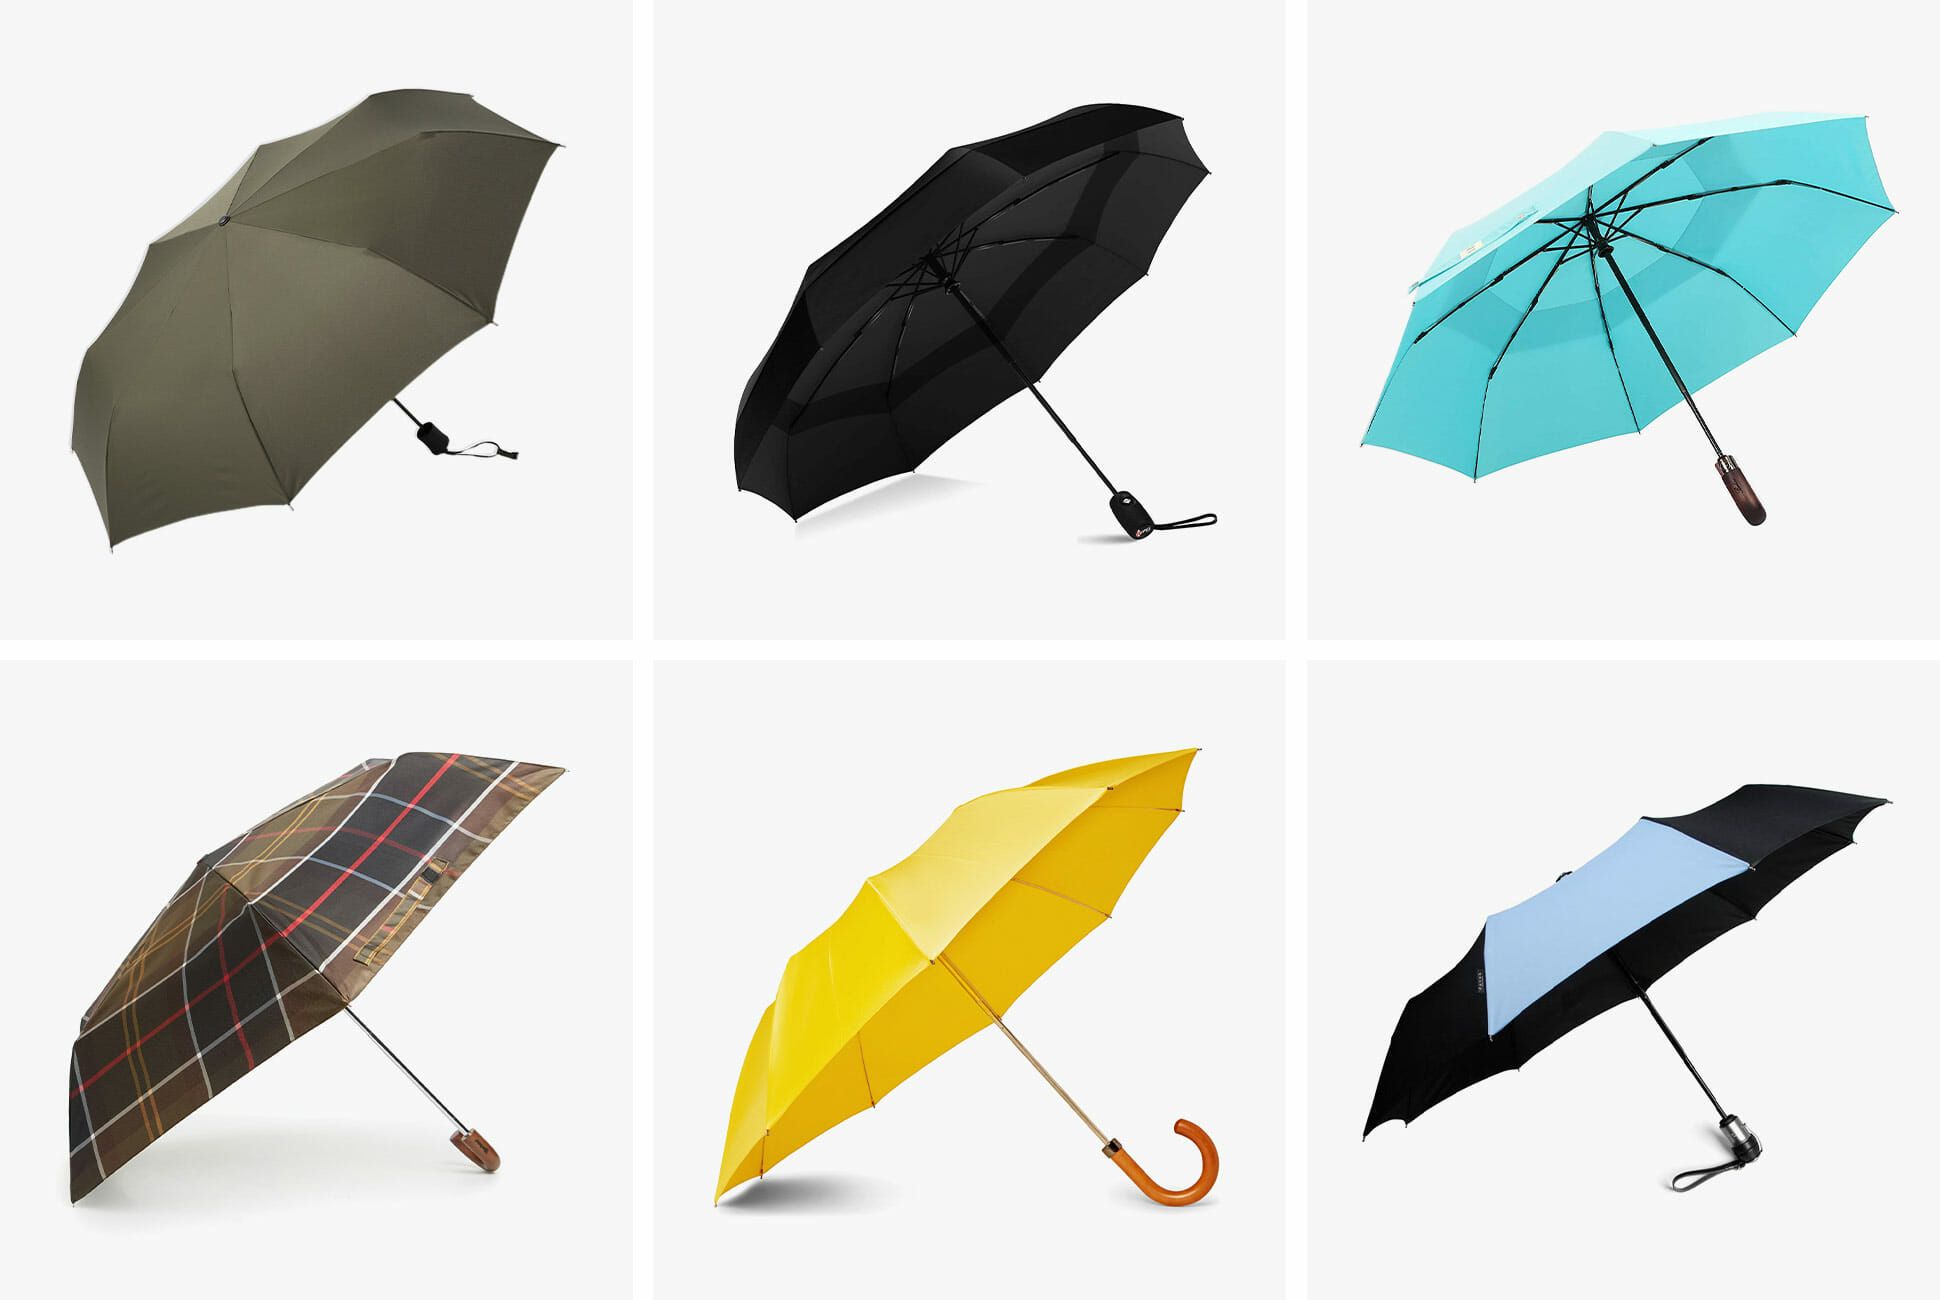 great umbrella